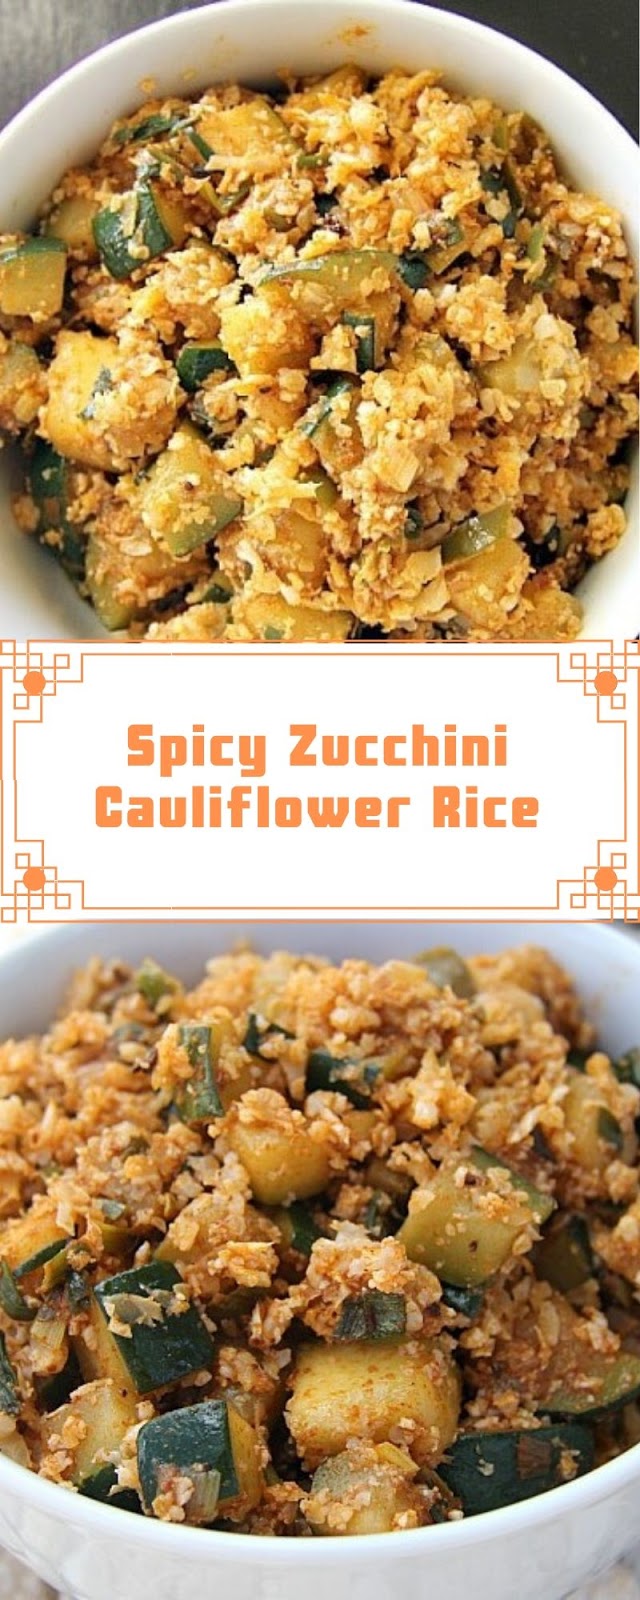 Spicy Zucchini Cauliflower Rice